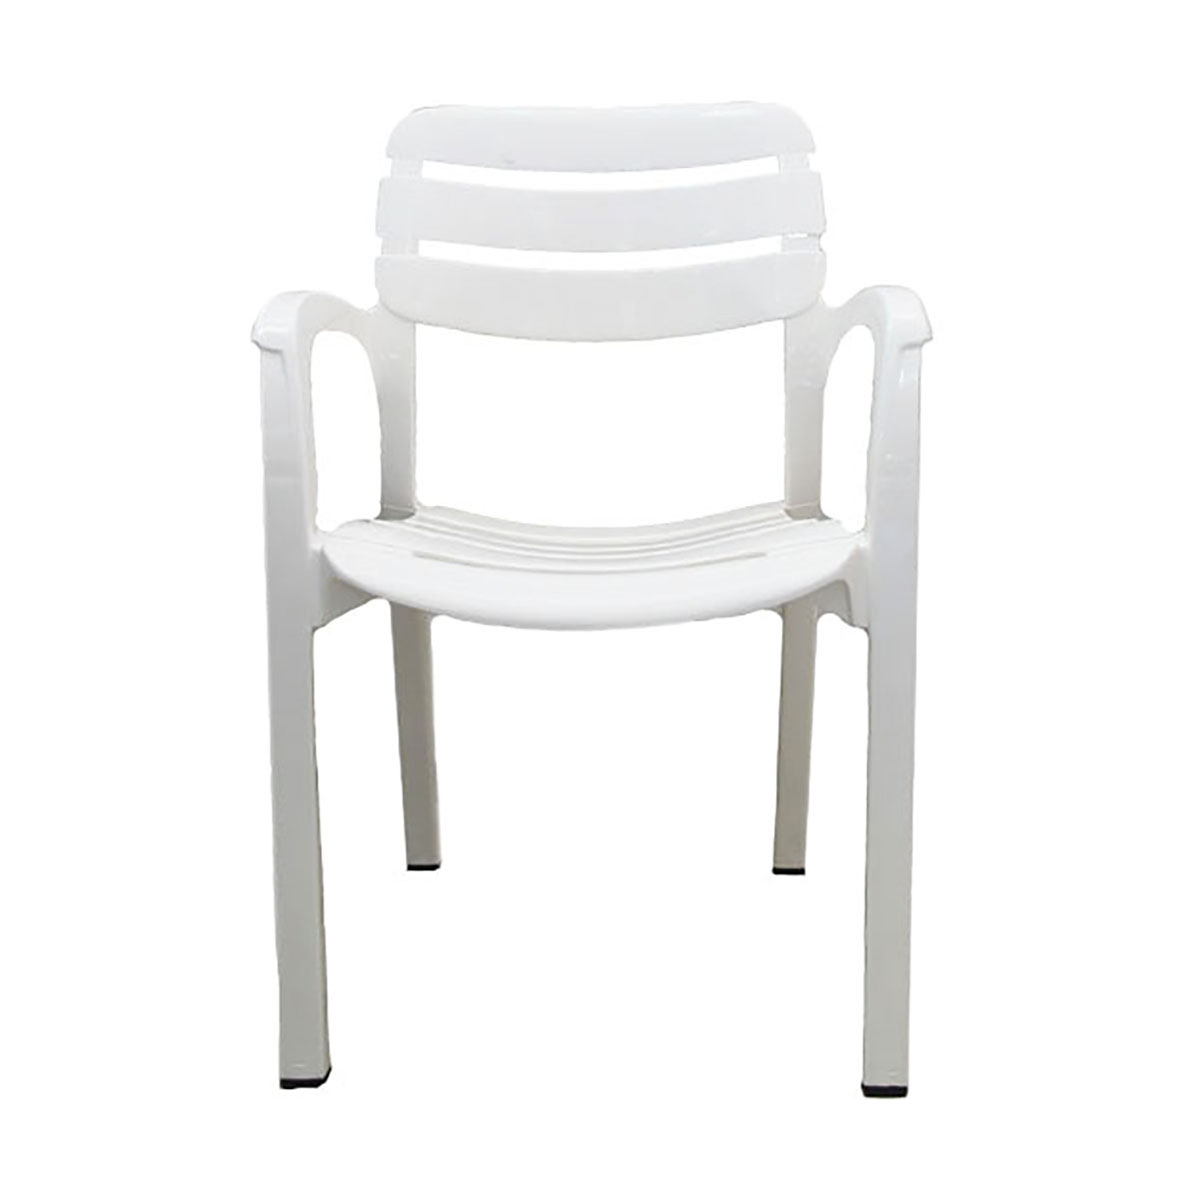 Садовое кресло Стандарт пластик Далгория 217476 44х60х83см белый